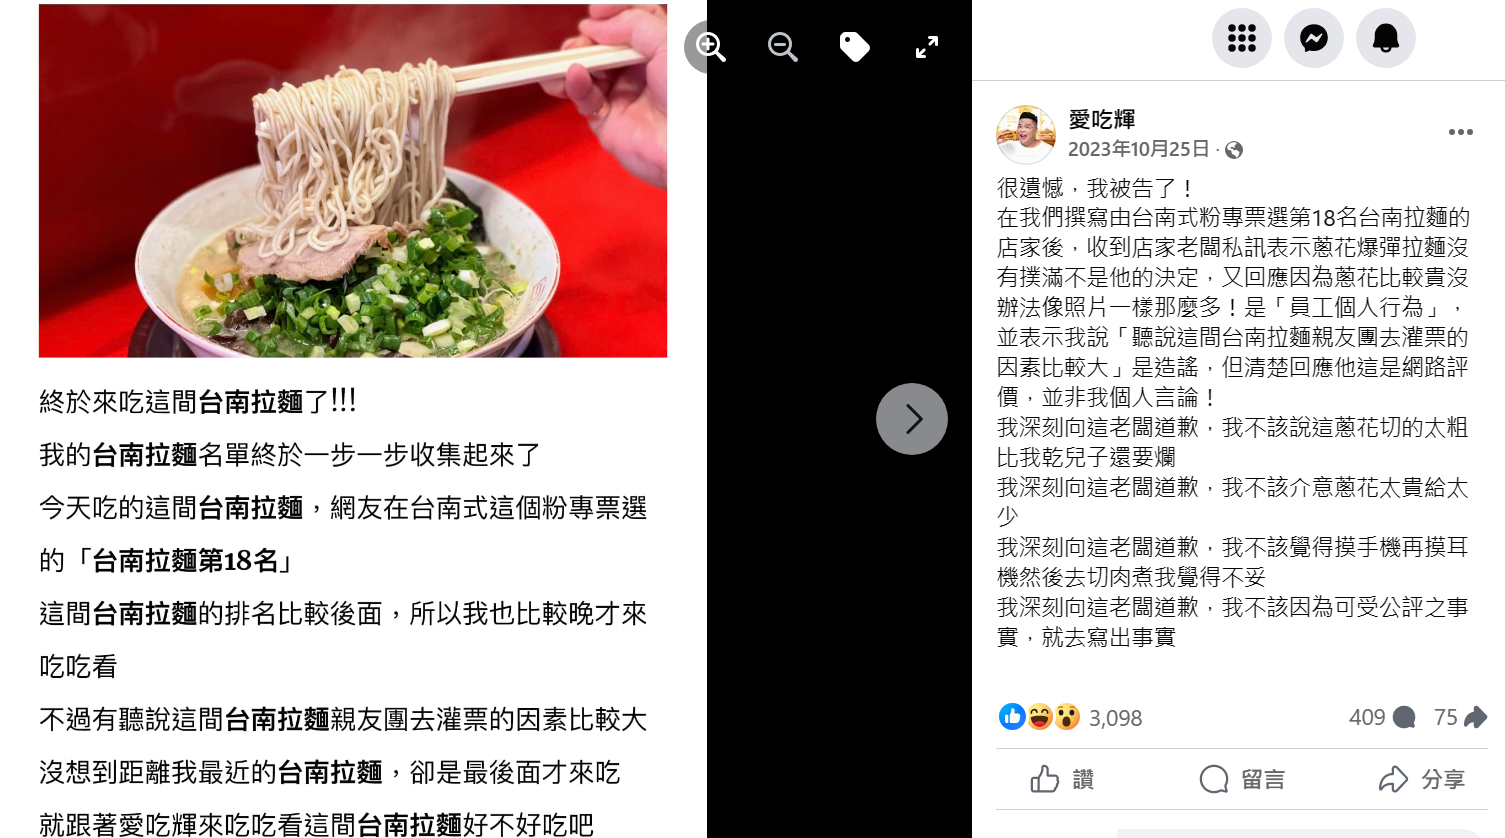 美食部落客撰文質疑台南人氣拉麵店「灌票」挨告 檢依加重誹謗起訴